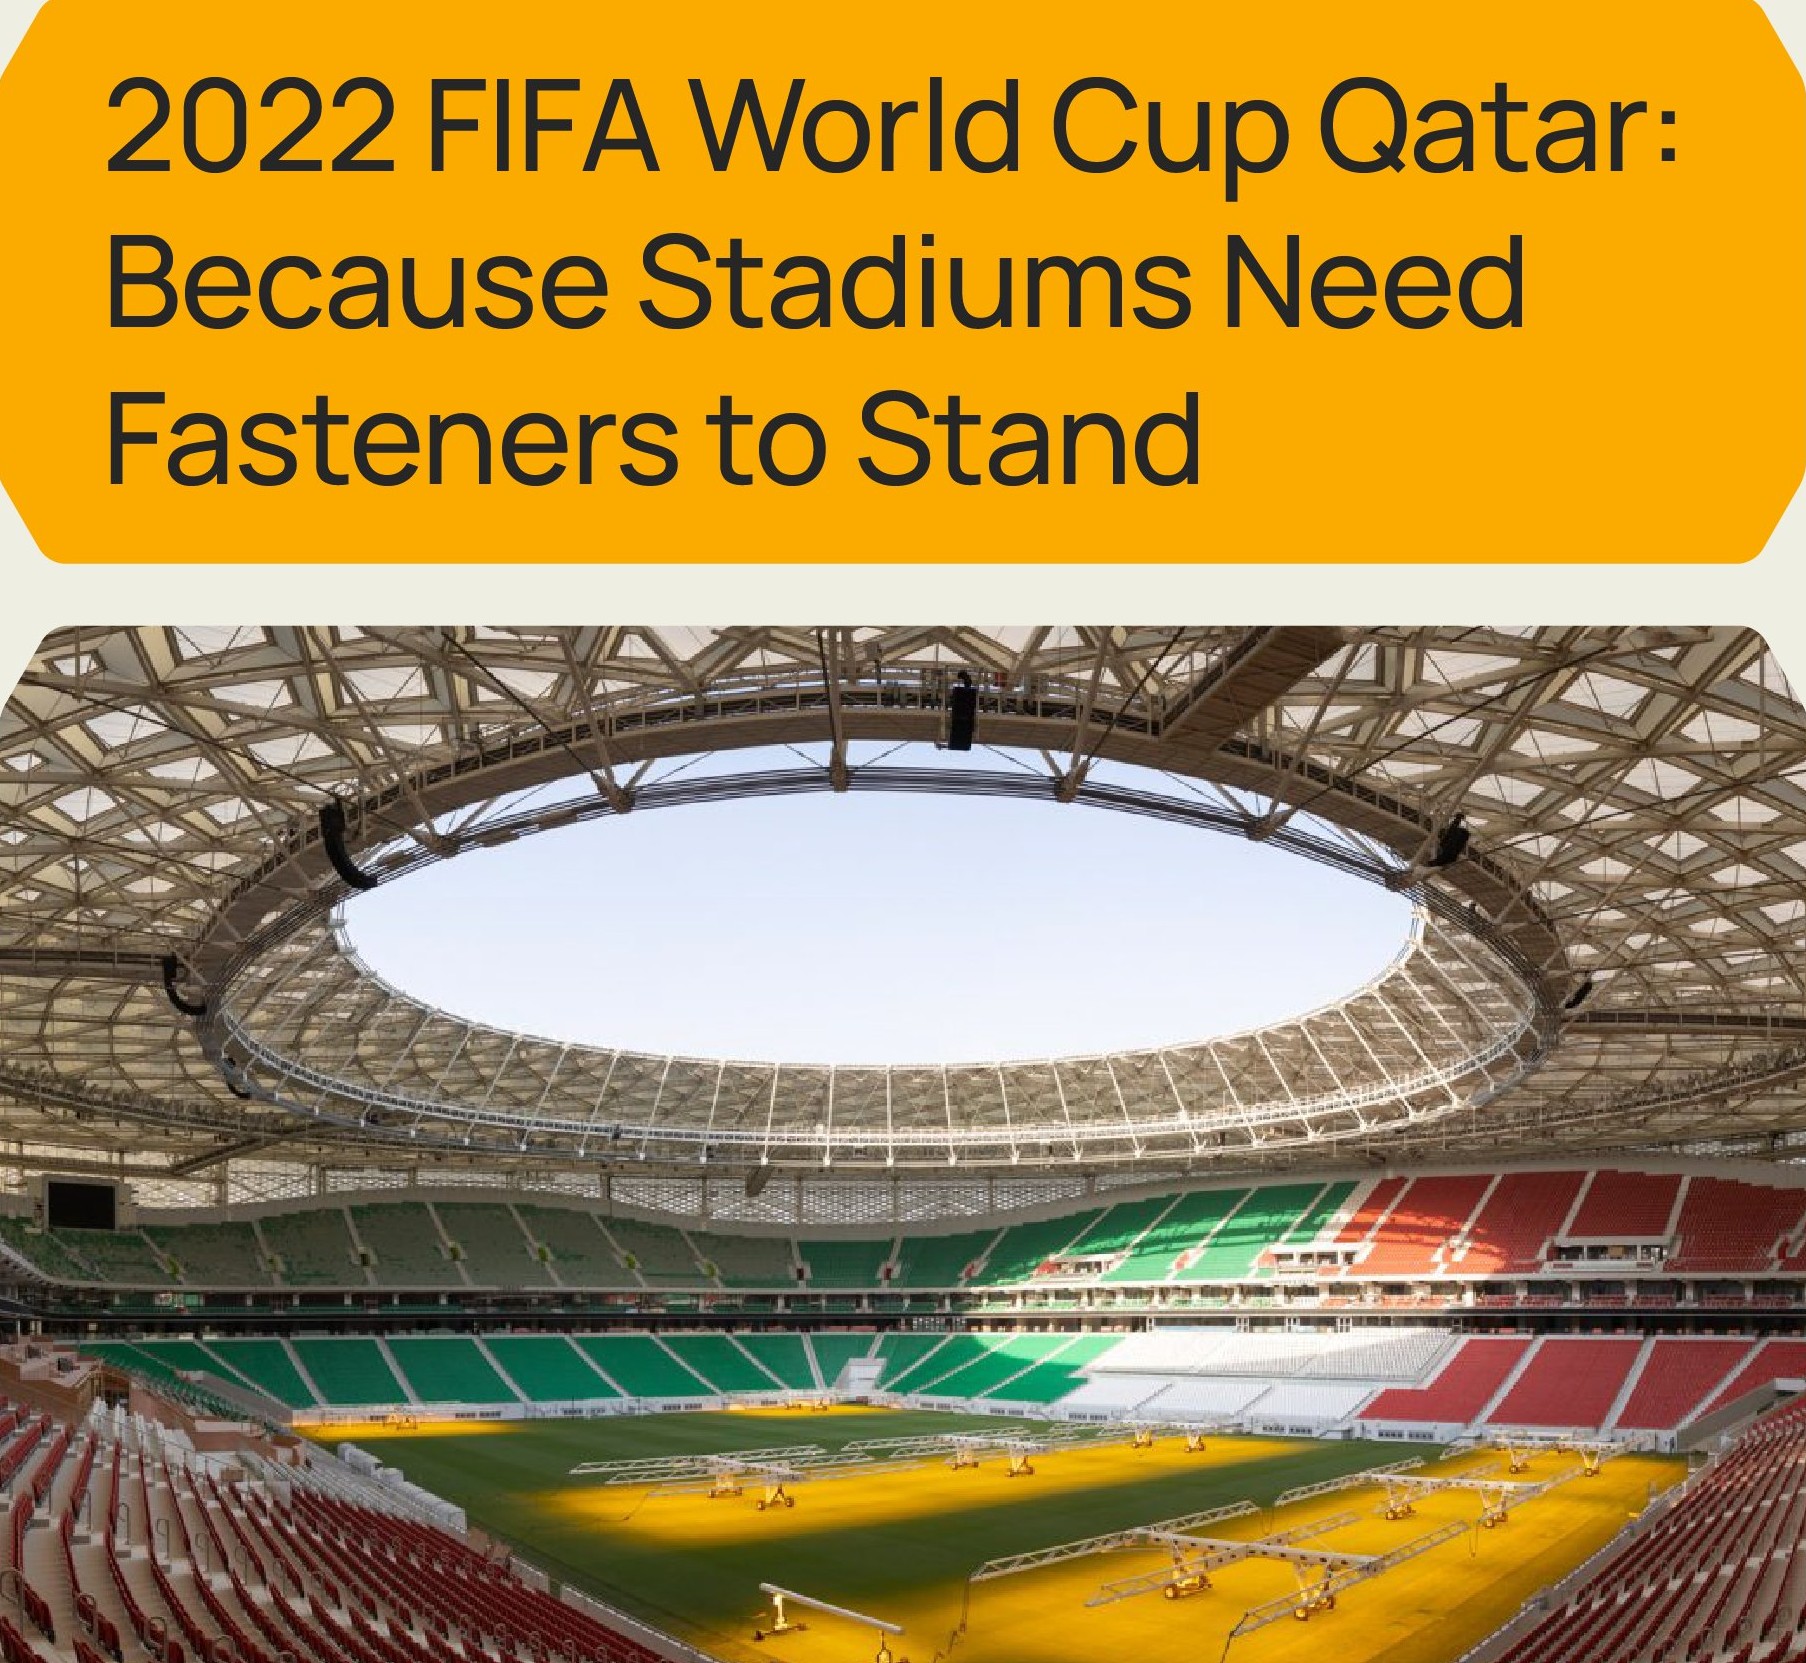 Παγκόσμιο Κύπελλο Ποδοσφαίρου 2022 στο Κατάρ